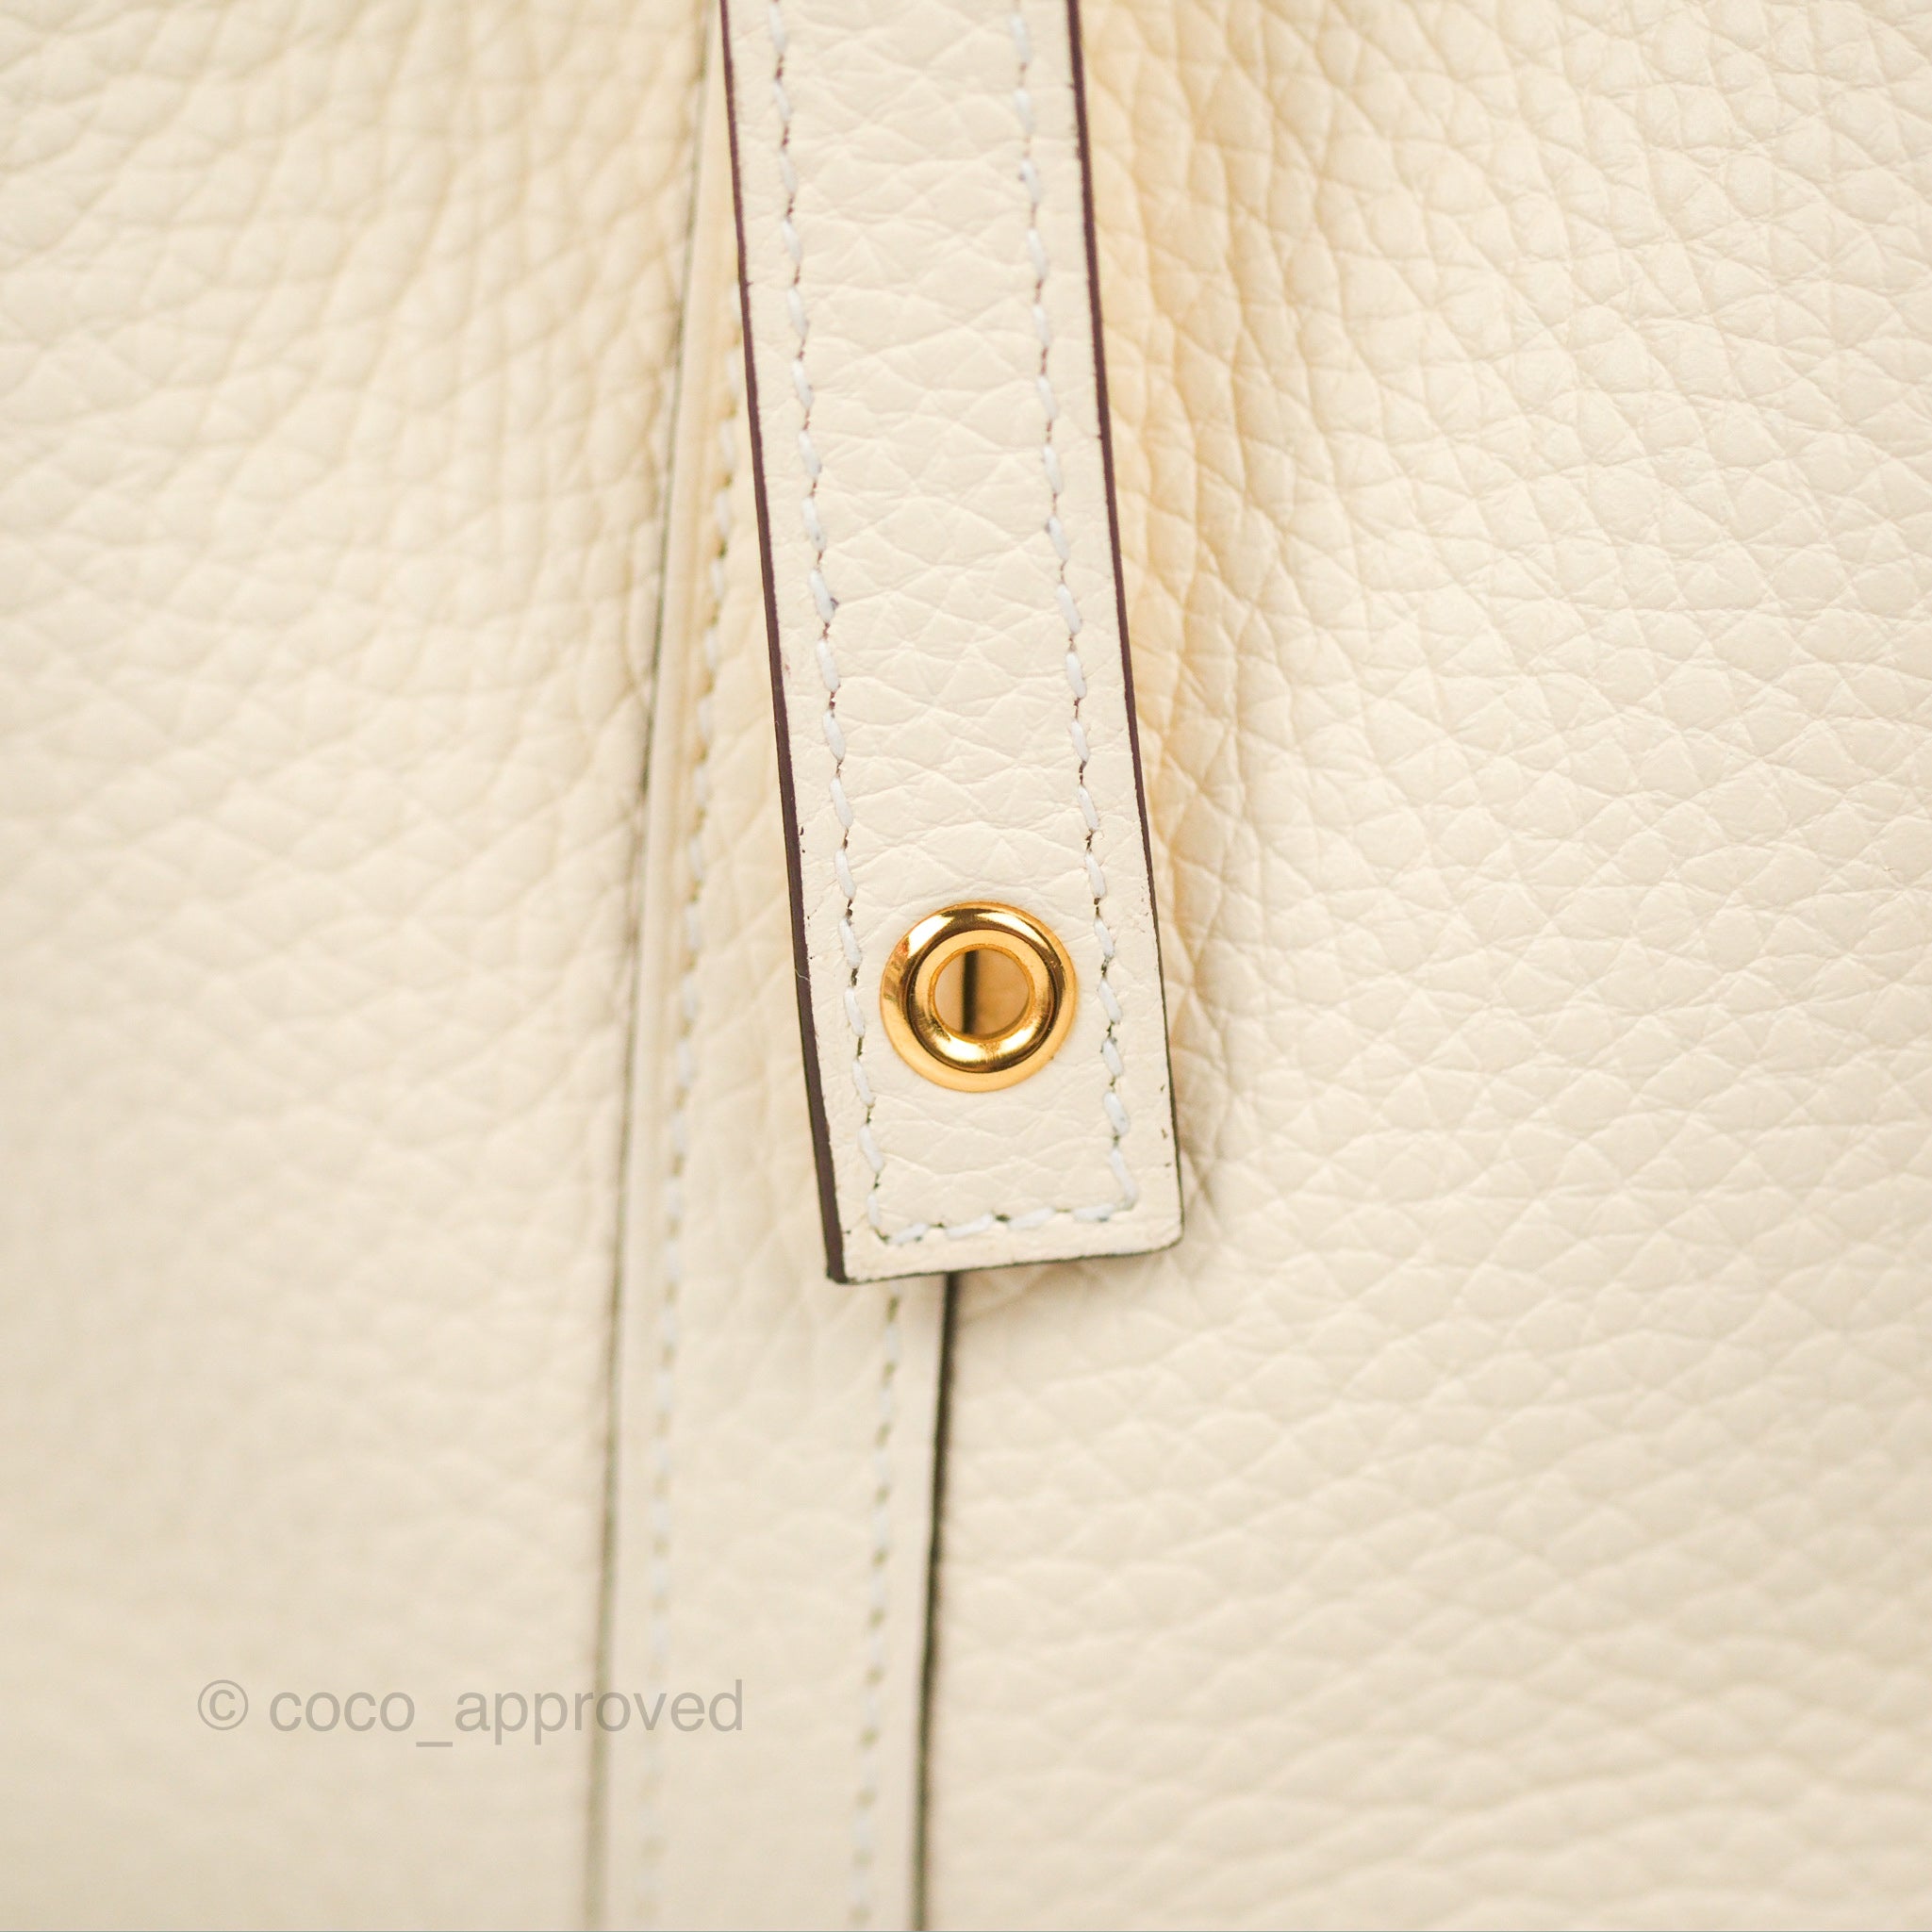 Hermès Picotin Lock 18 Rose Sakura Taurillon Clemence Palladium Hardwa –  Coco Approved Studio